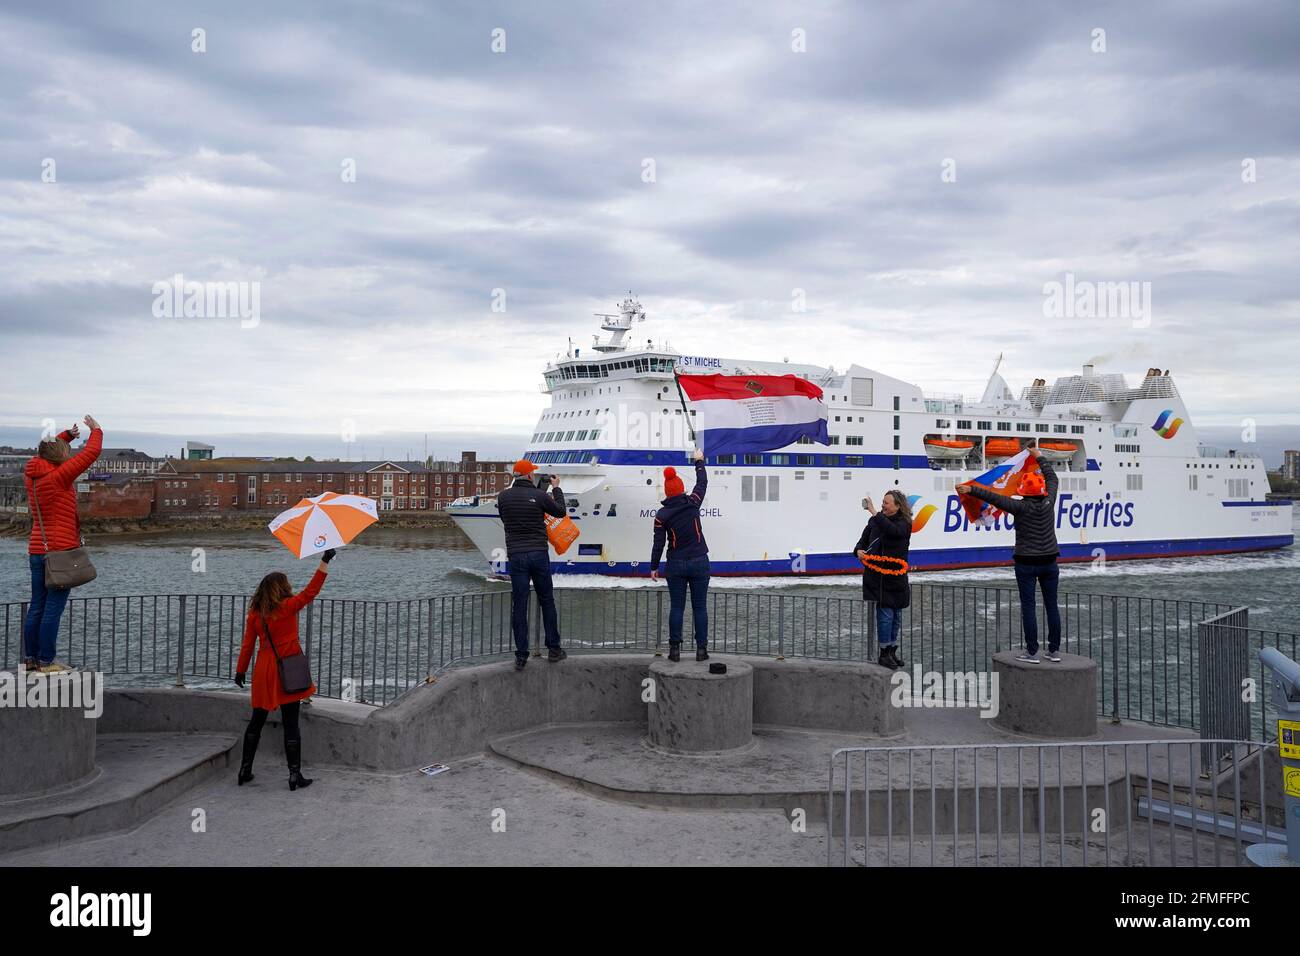 Eine Gruppe Holländer winkt ihren Freunden auf einer Brittany Ferry ab, als sie das Vereinigte Königreich verlassen, um nach Frankreich zu ziehen. Bilddatum: Sonntag, 9. Mai 2021. Stockfoto